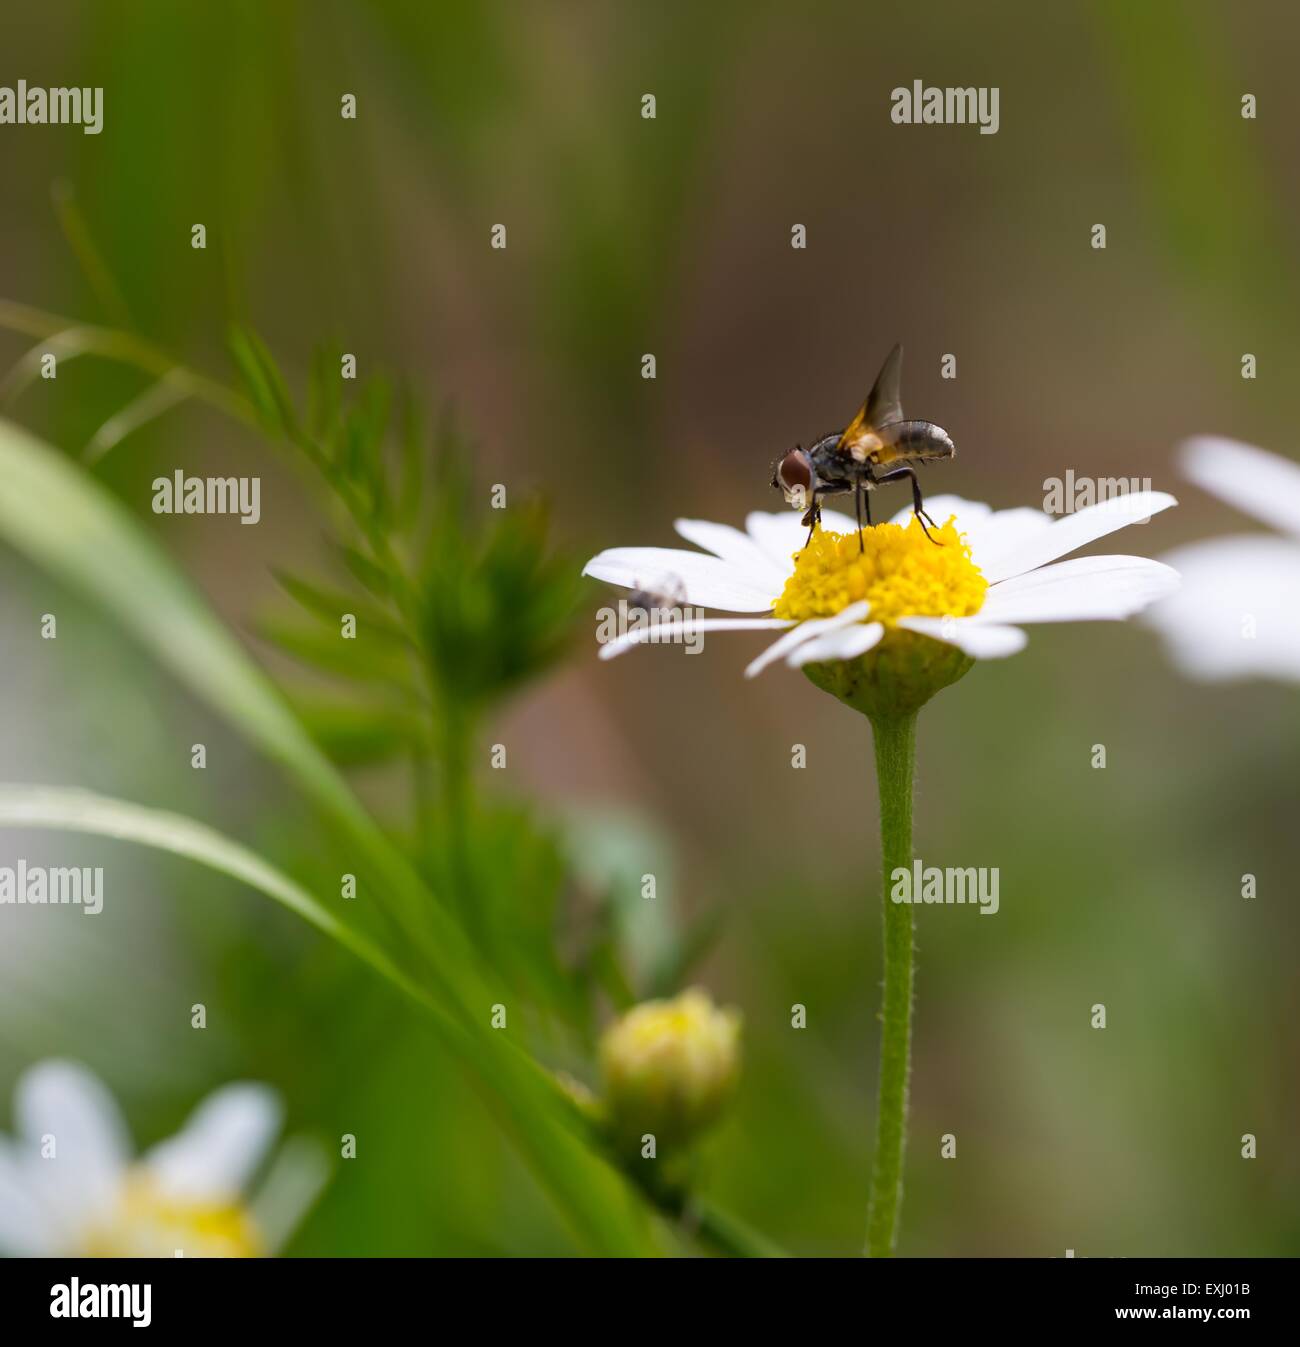 Fly seduto sulla pianta. Close up di insetti fotografati in natura. Foto Stock